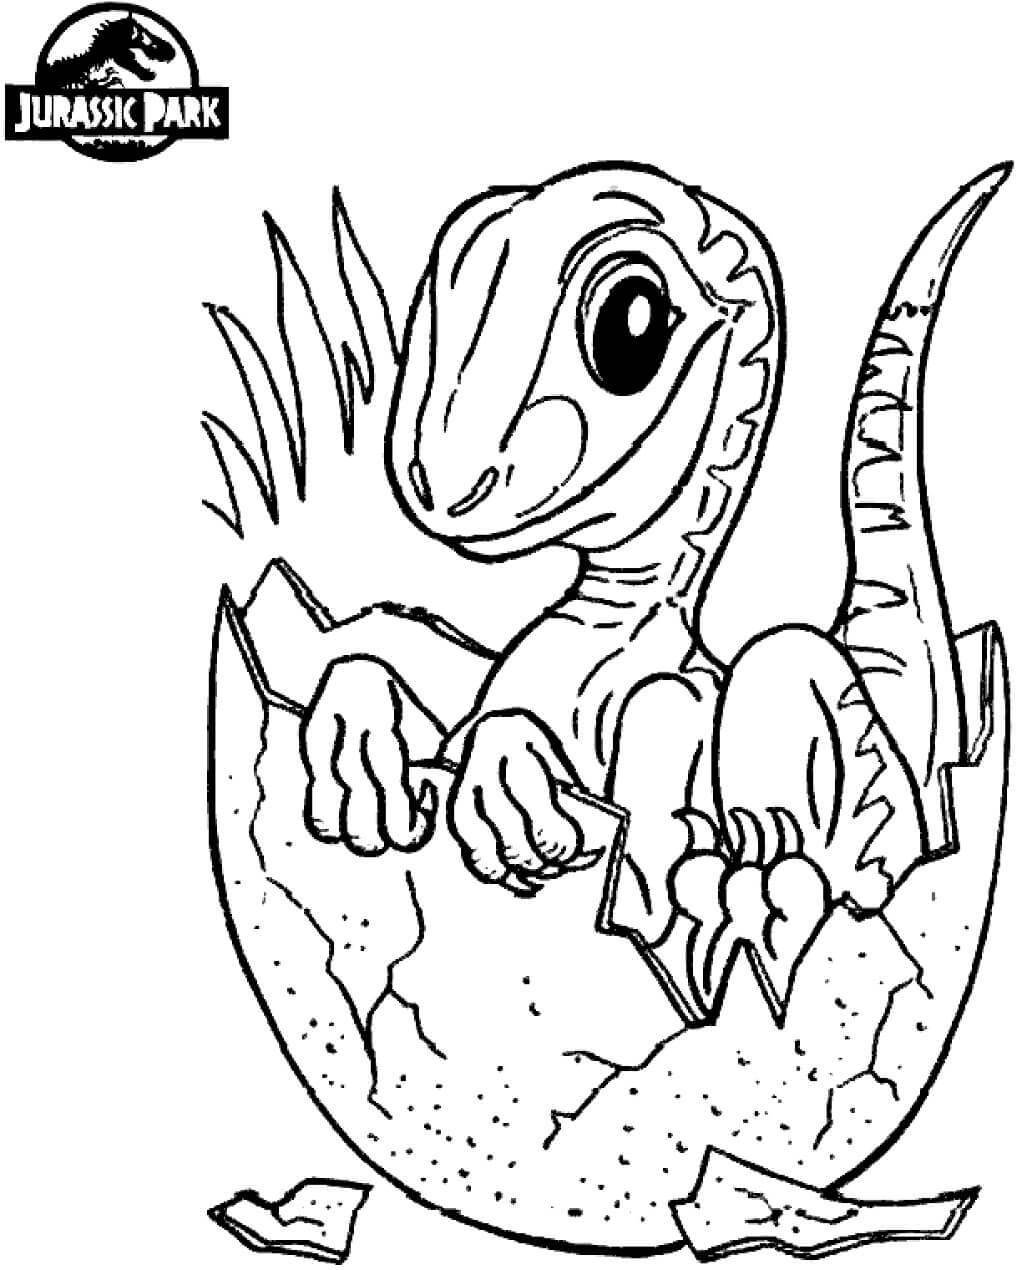 Dibujos de Bebé Dinosaurio en el Mundo Jurásico para colorear